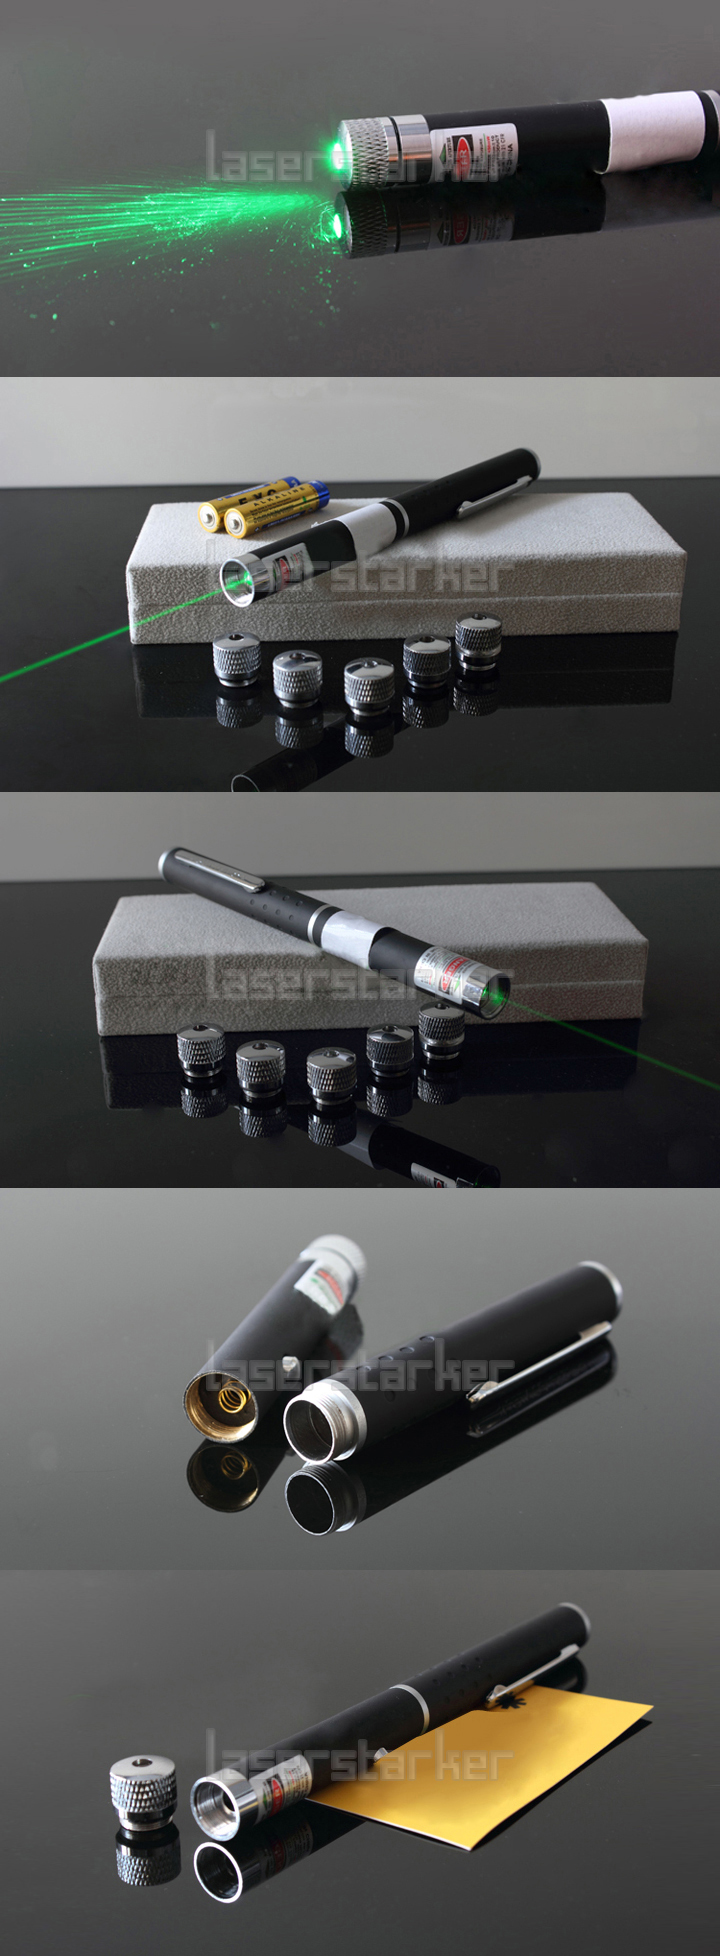 100mW laserpointer